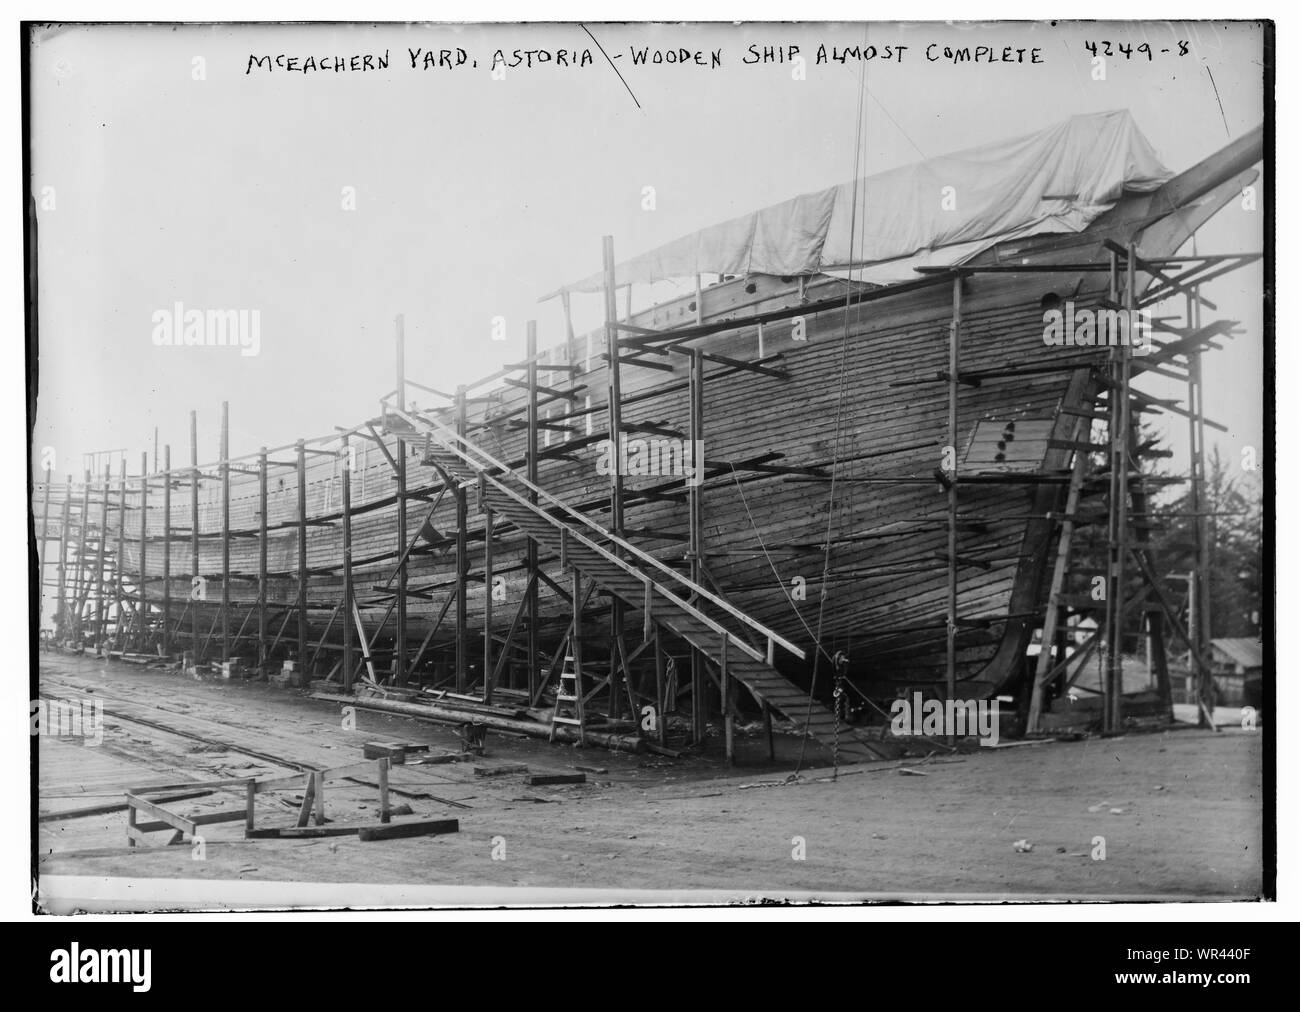 Cour McEachern, Astoria -- bateau en bois presque terminée Banque D'Images